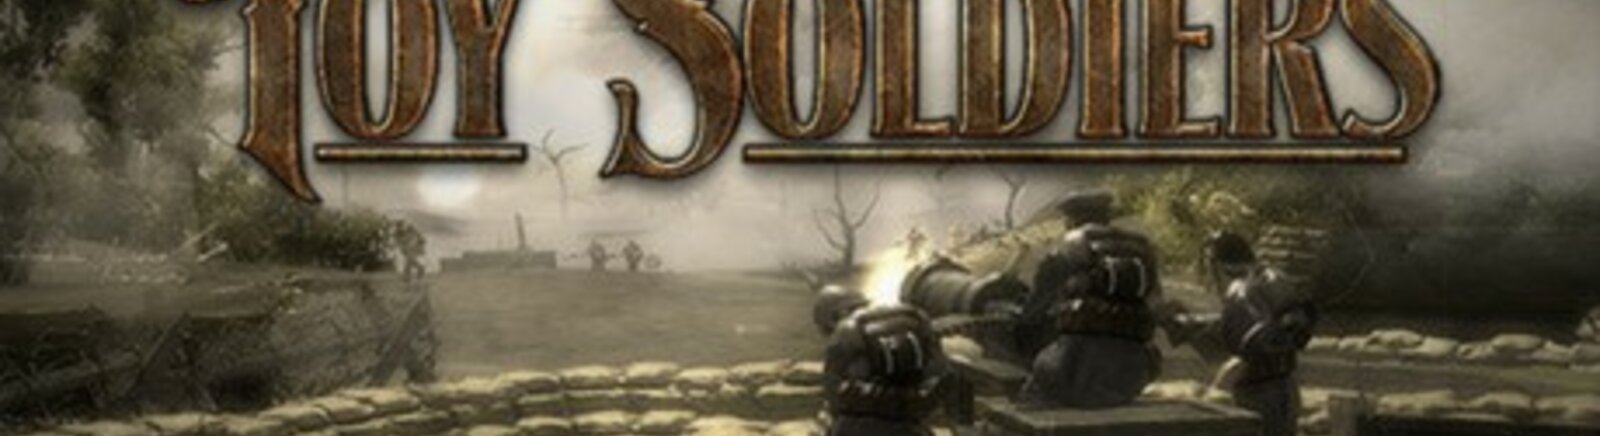 Дата выхода Toy Soldiers  на PC и Xbox 360 в России и во всем мире